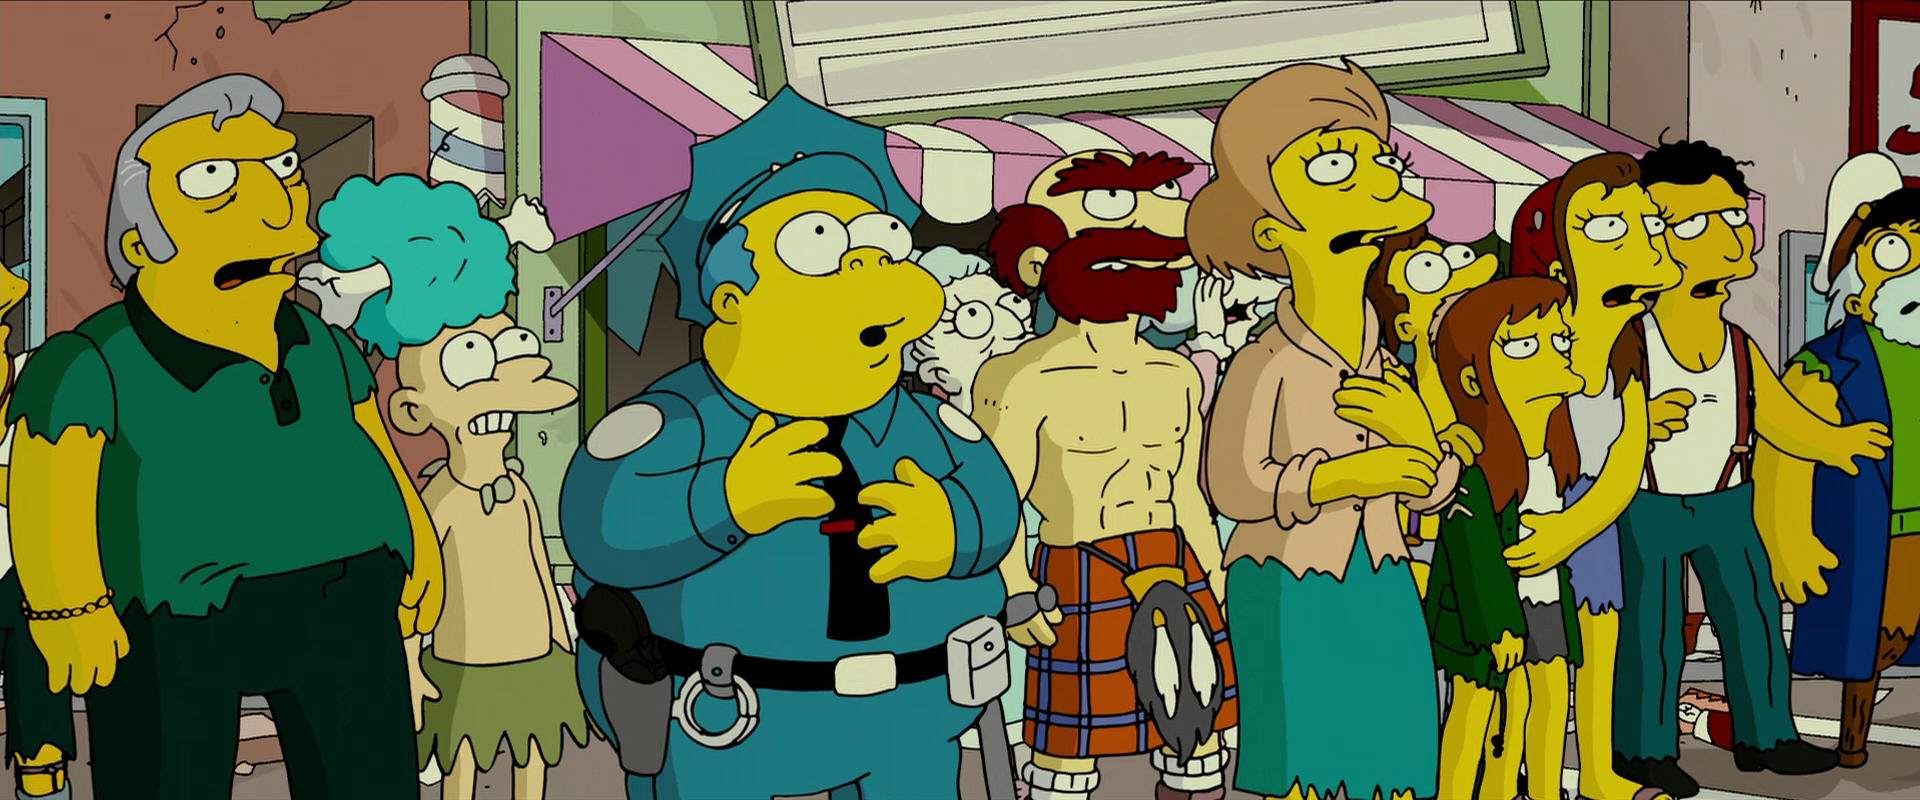 Os Simpsons acertam nova previsão; dessa vez sobre protestos nos EUA